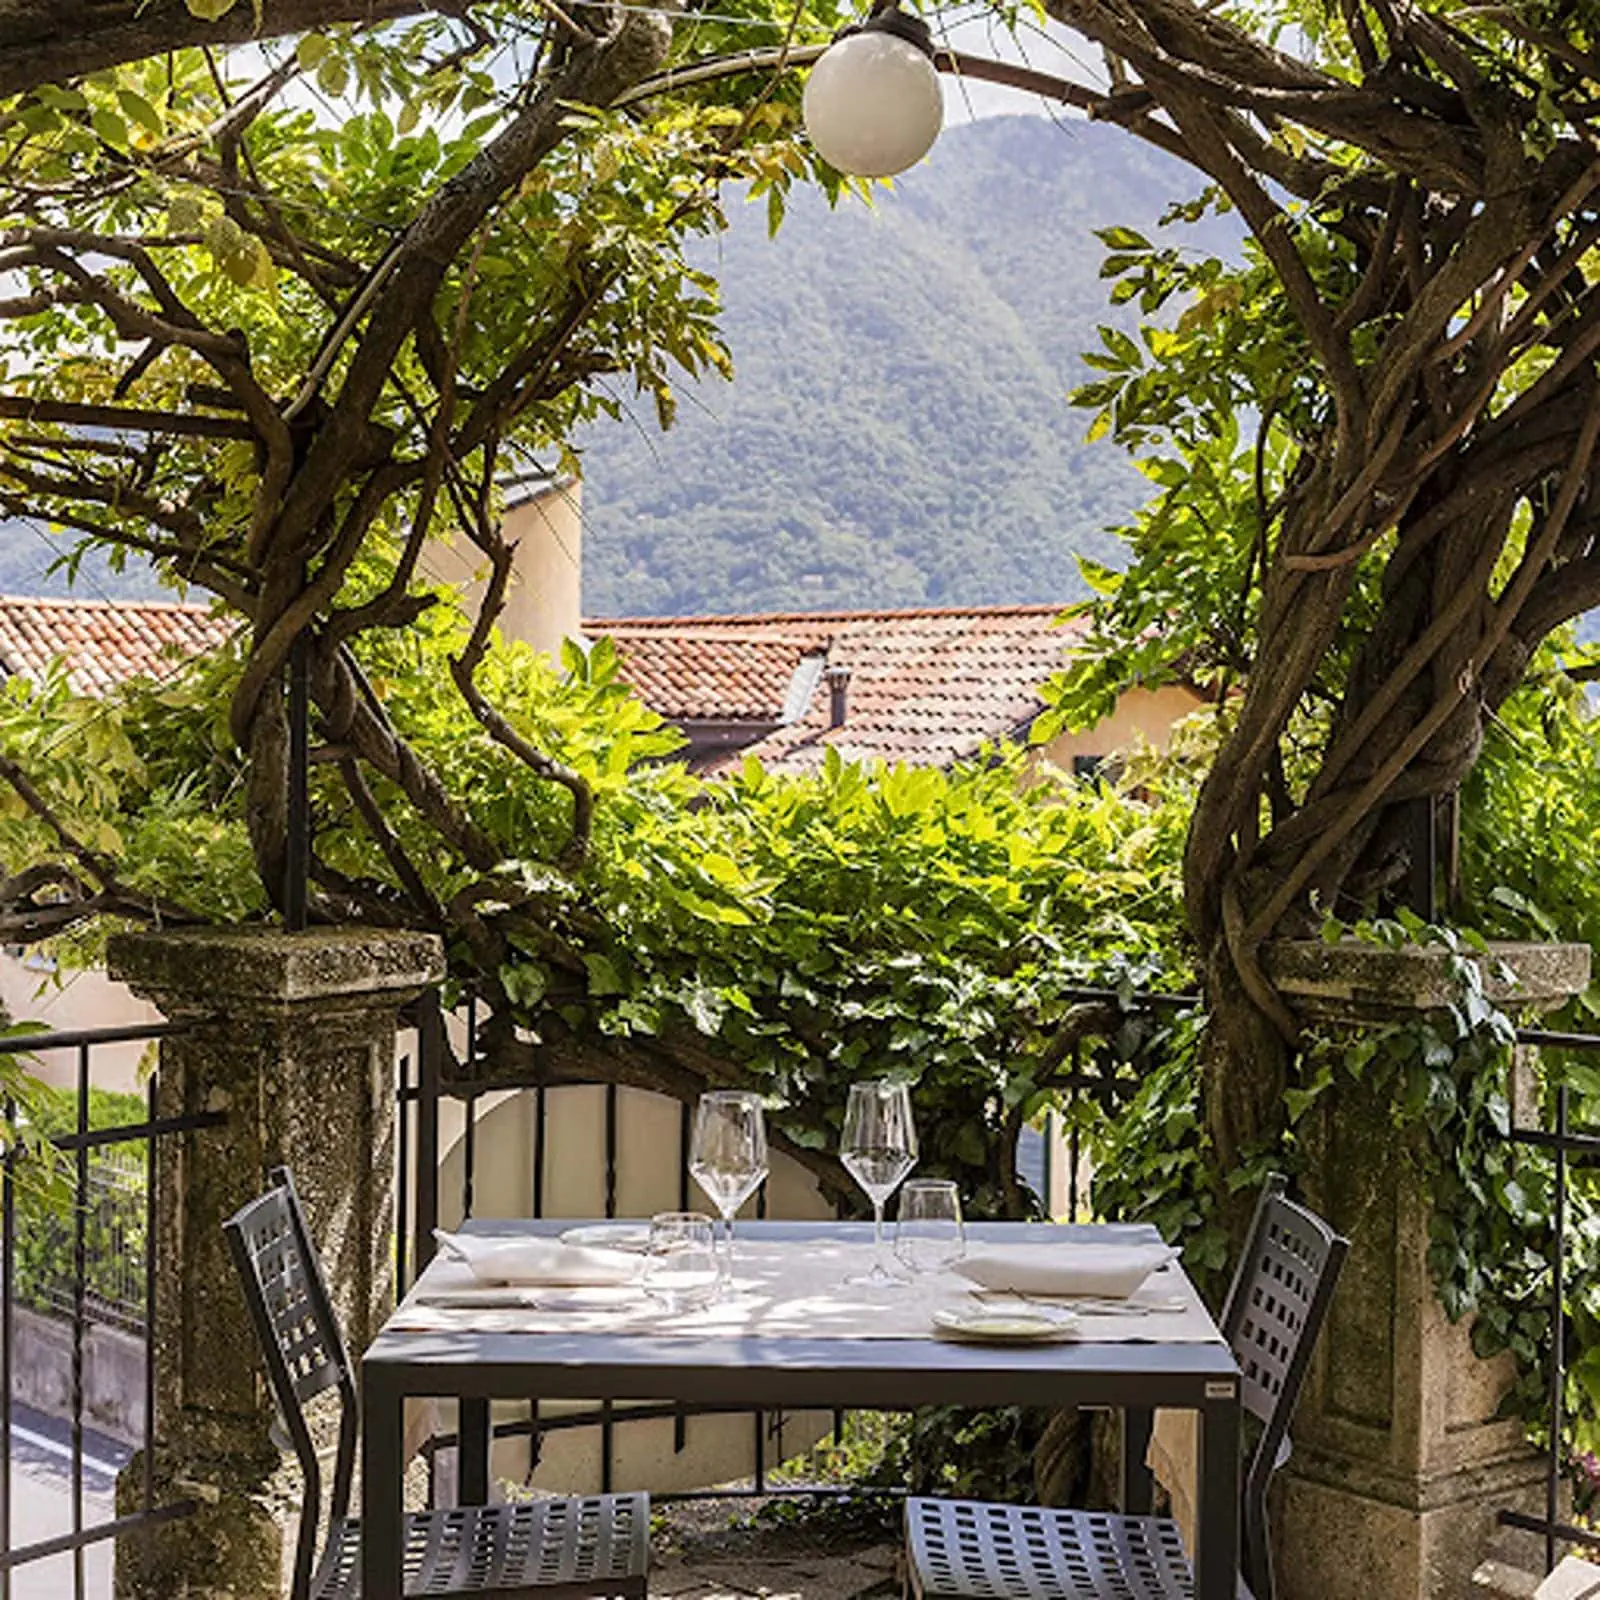 Outdoor seating area at Trattoria del Glicine in Lake Como